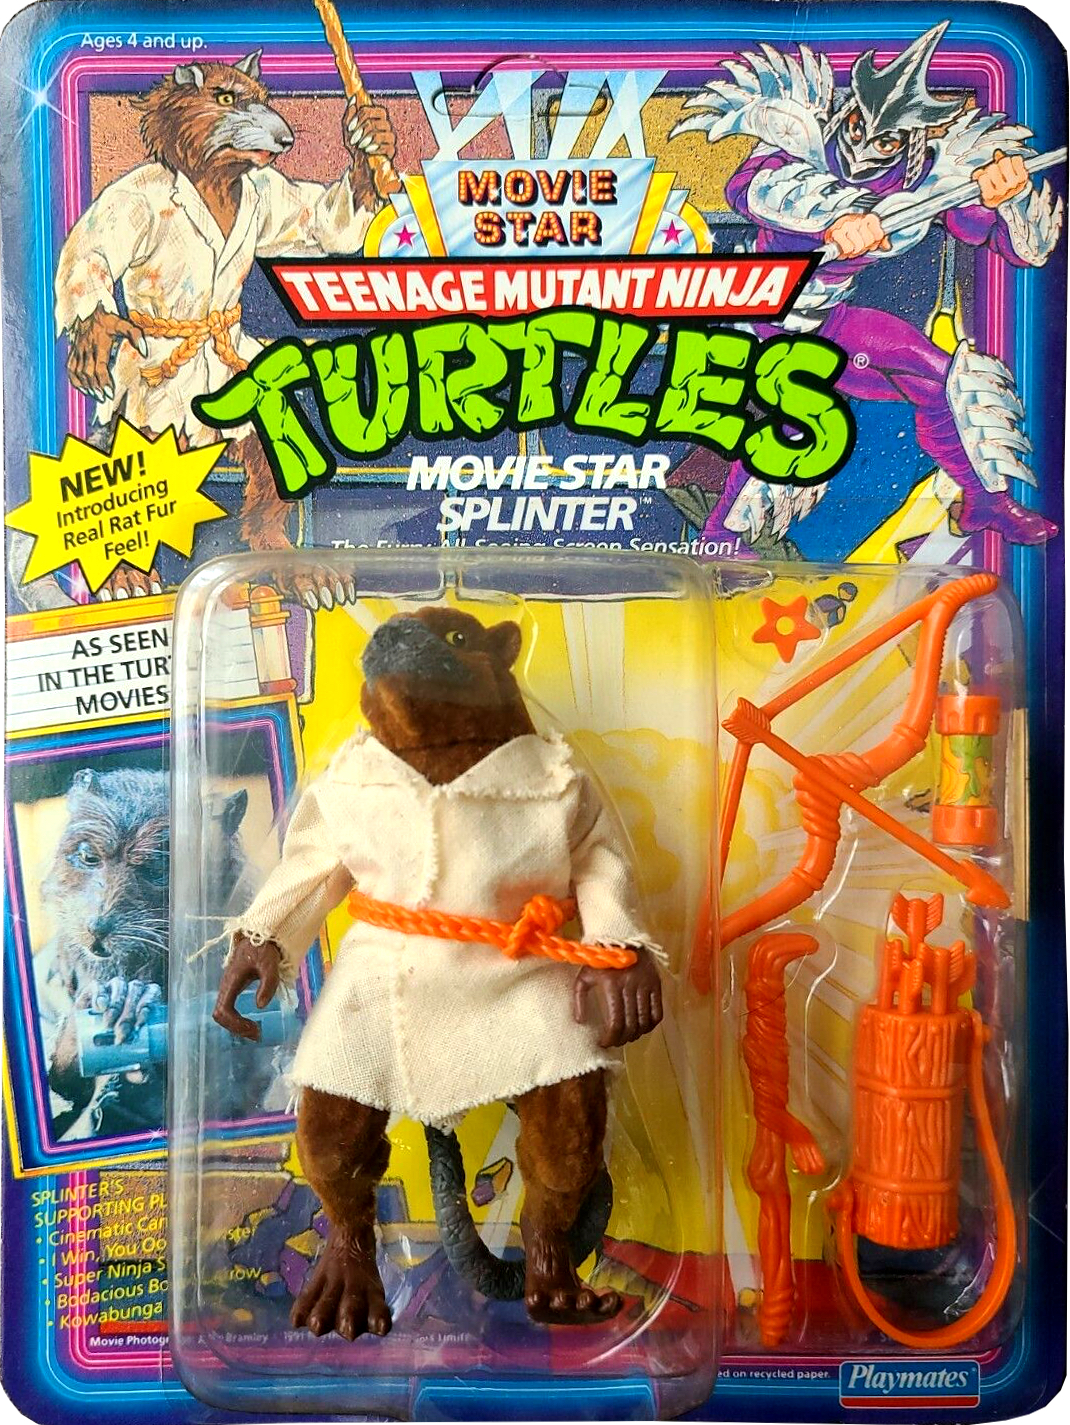 Teenage Mutant Ninja Turtles Playmates Movie Star